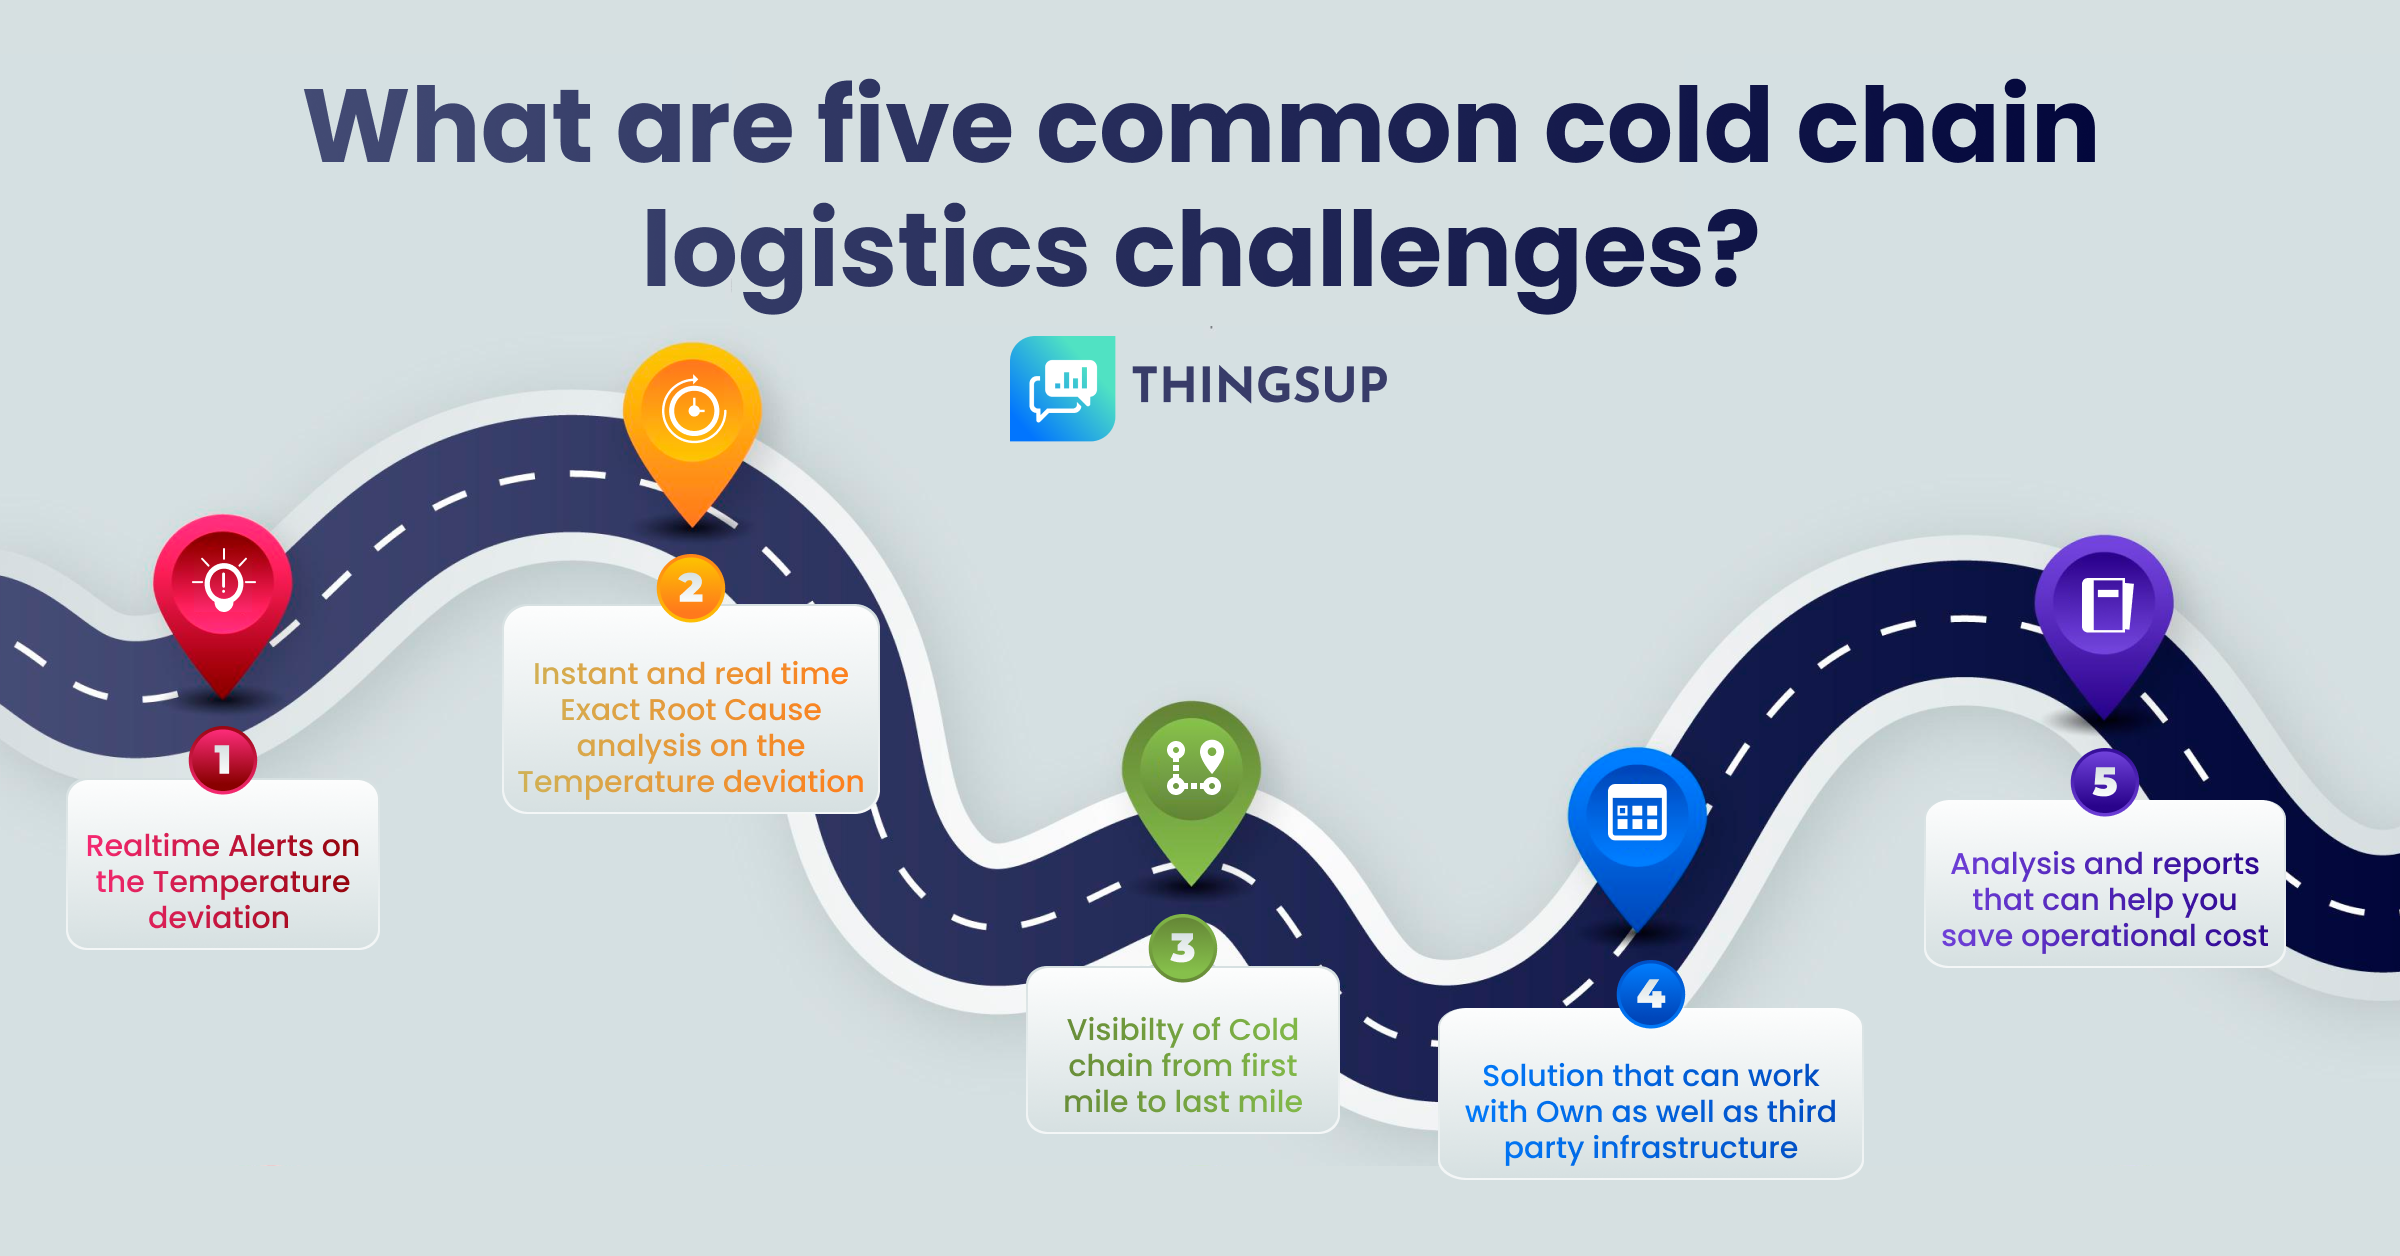 Cold Chain logistics